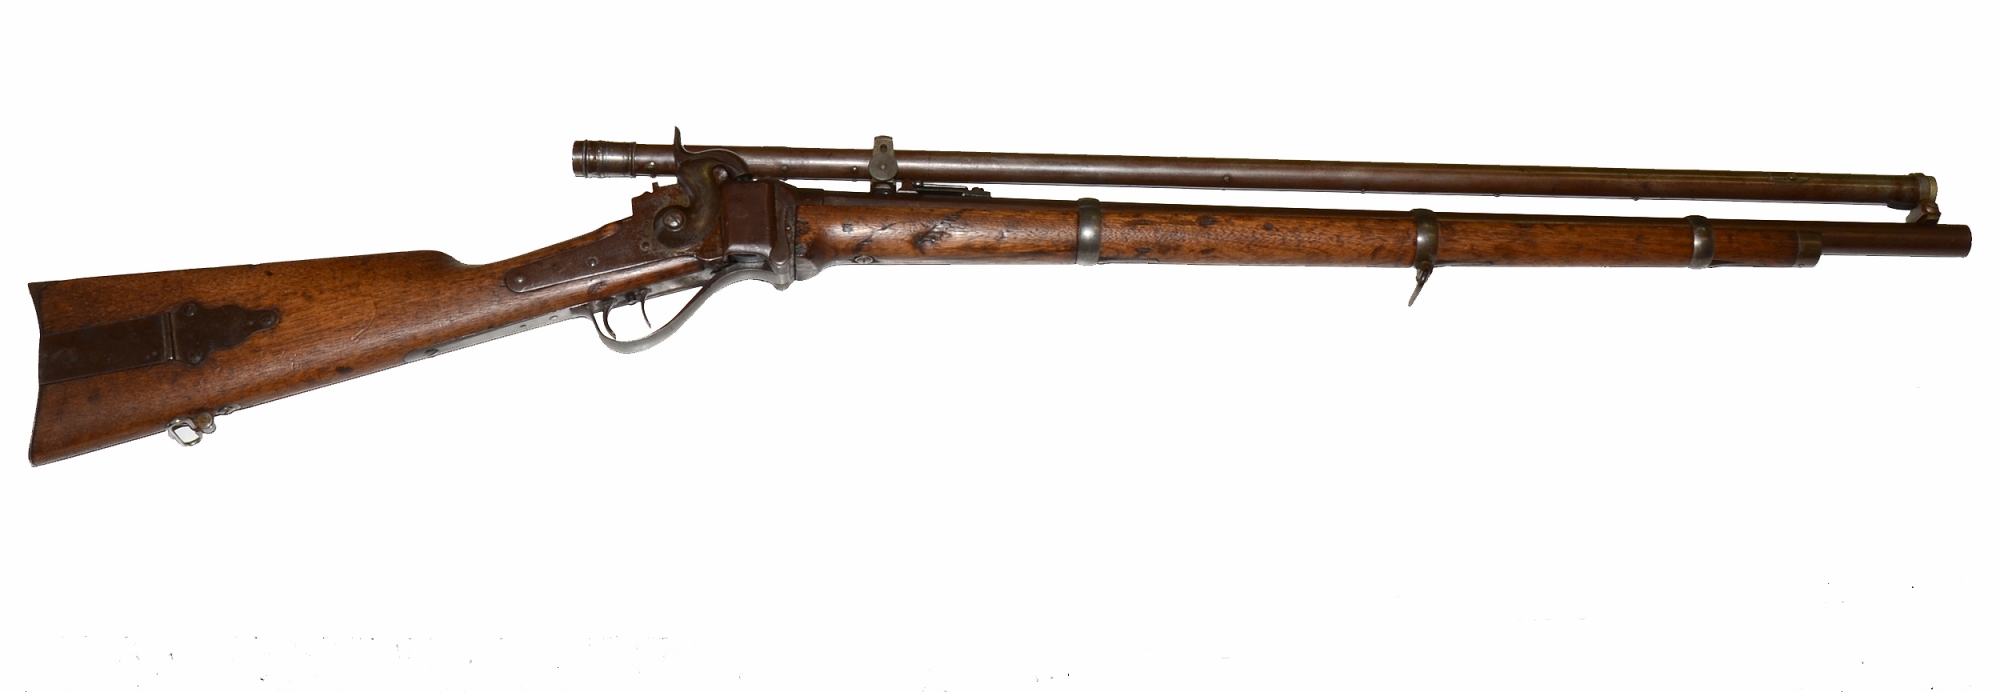 Civil war sharps rifle for sale